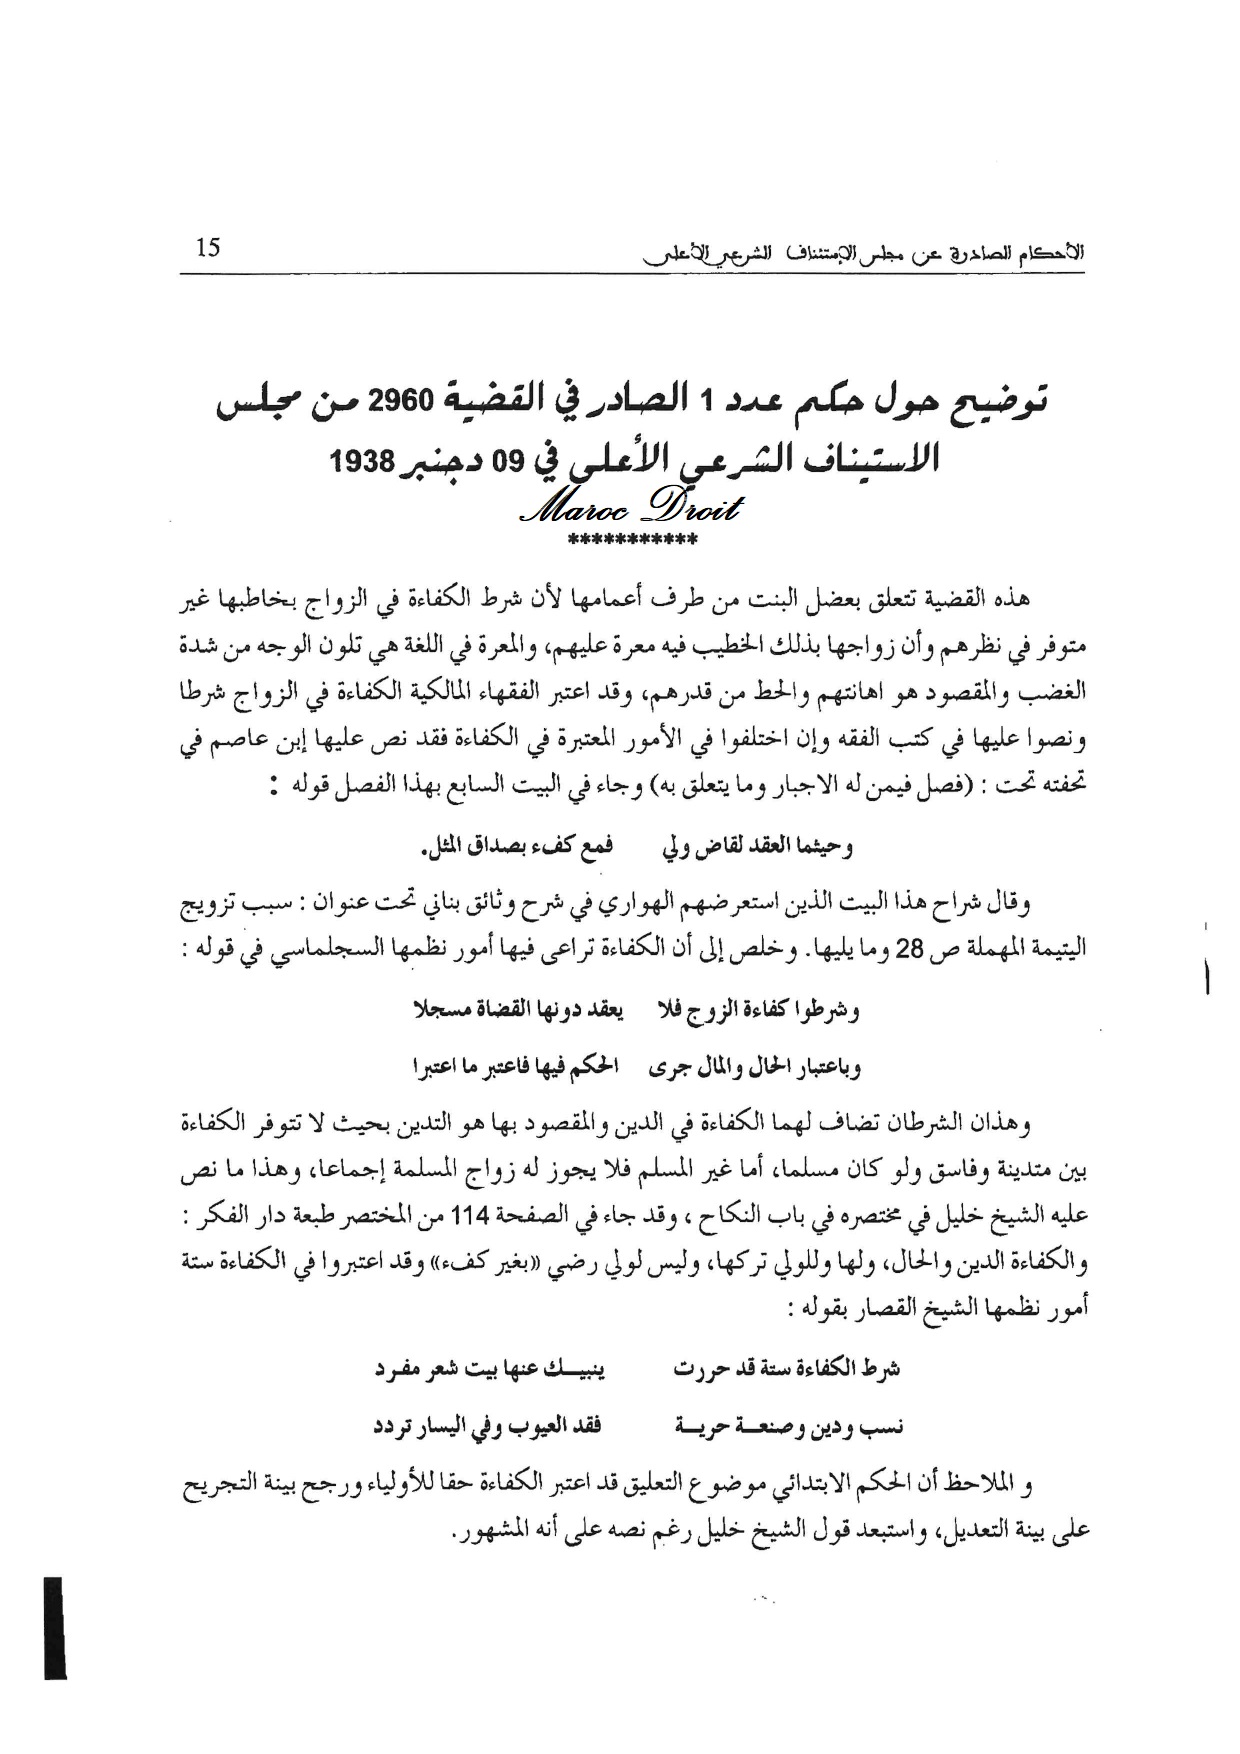 نوستالجيا القضاء المغربي (1): القضية عدد 2960 حول شرط الكفاءة في الزواج بقلم ذ إبراهيم بحماني